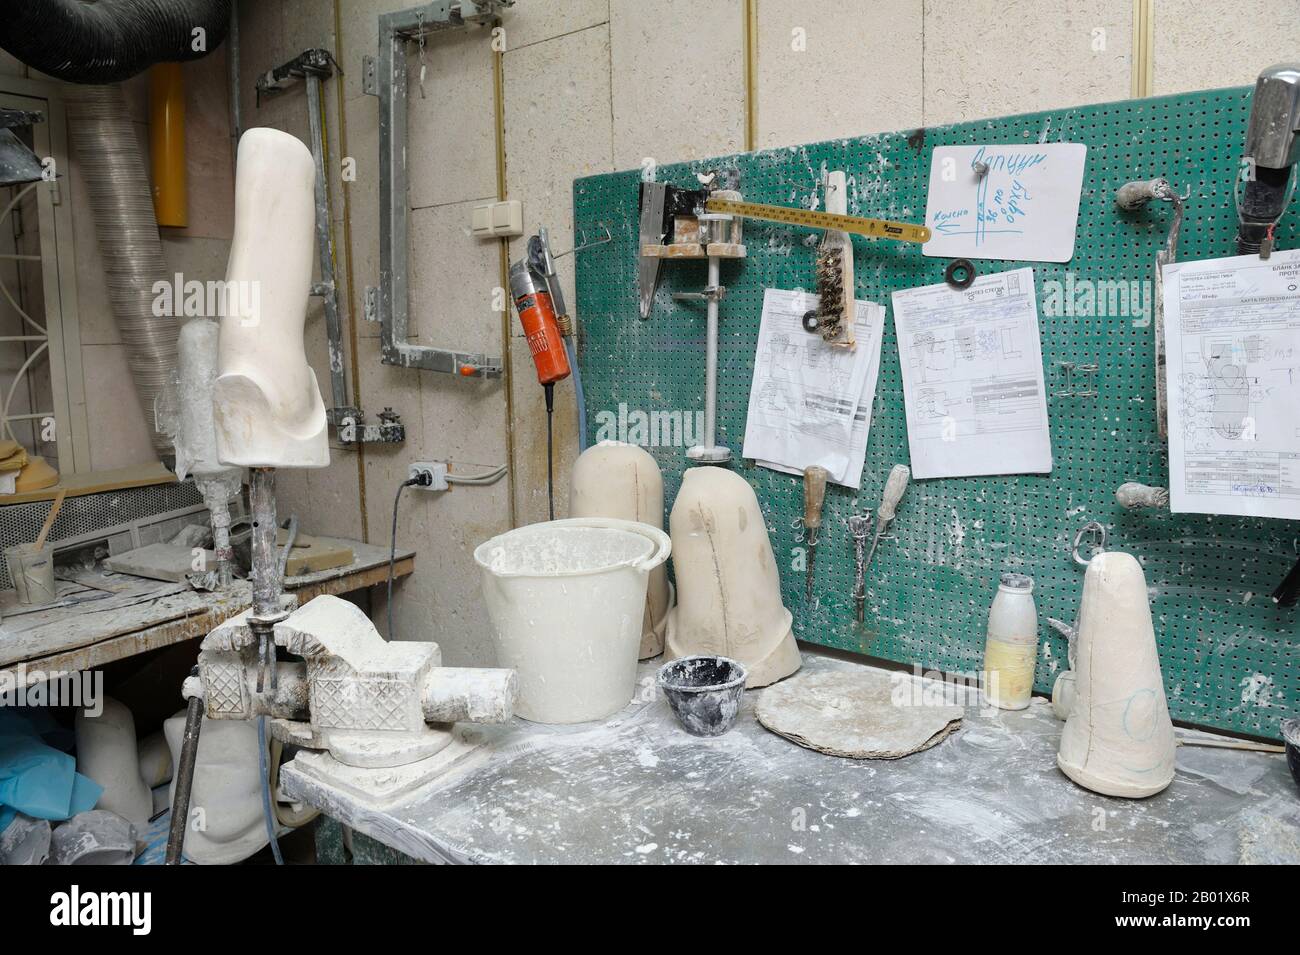 In der Prothesenwerkstatt. Holzrohlinge, Tischhalter, Töpfe und Werkzeuge auf einem Arbeitstisch zur Herstellung künstlicher Gliedmaßen Stockfoto